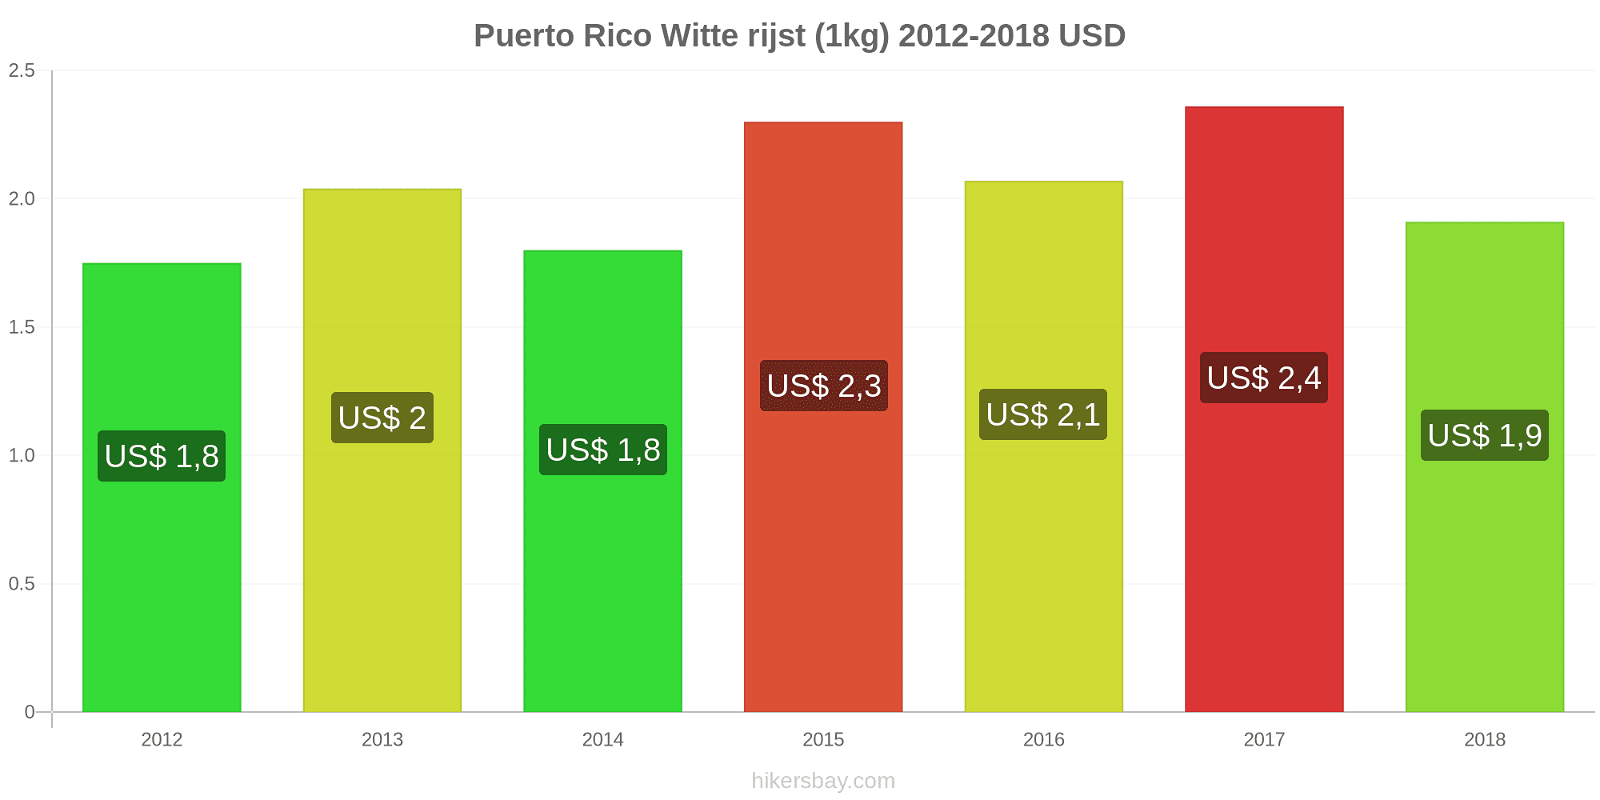 Puerto Rico prijswijzigingen Rijst (wit) (1kg) hikersbay.com